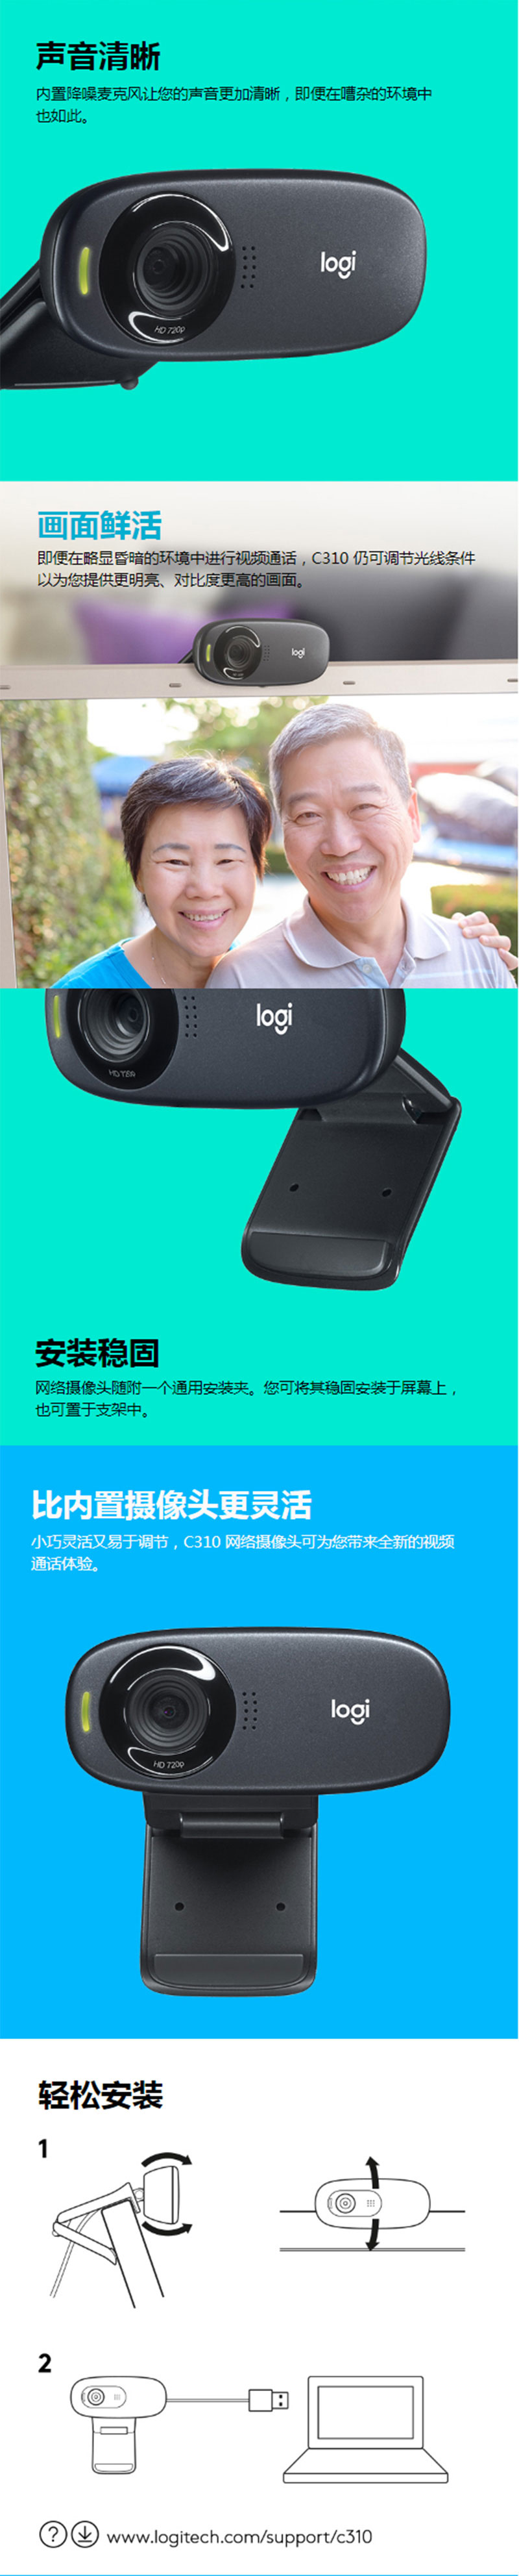 罗技（Logitech）C310 高清晰网络摄像头 高清视频通话 即插即用摄像头